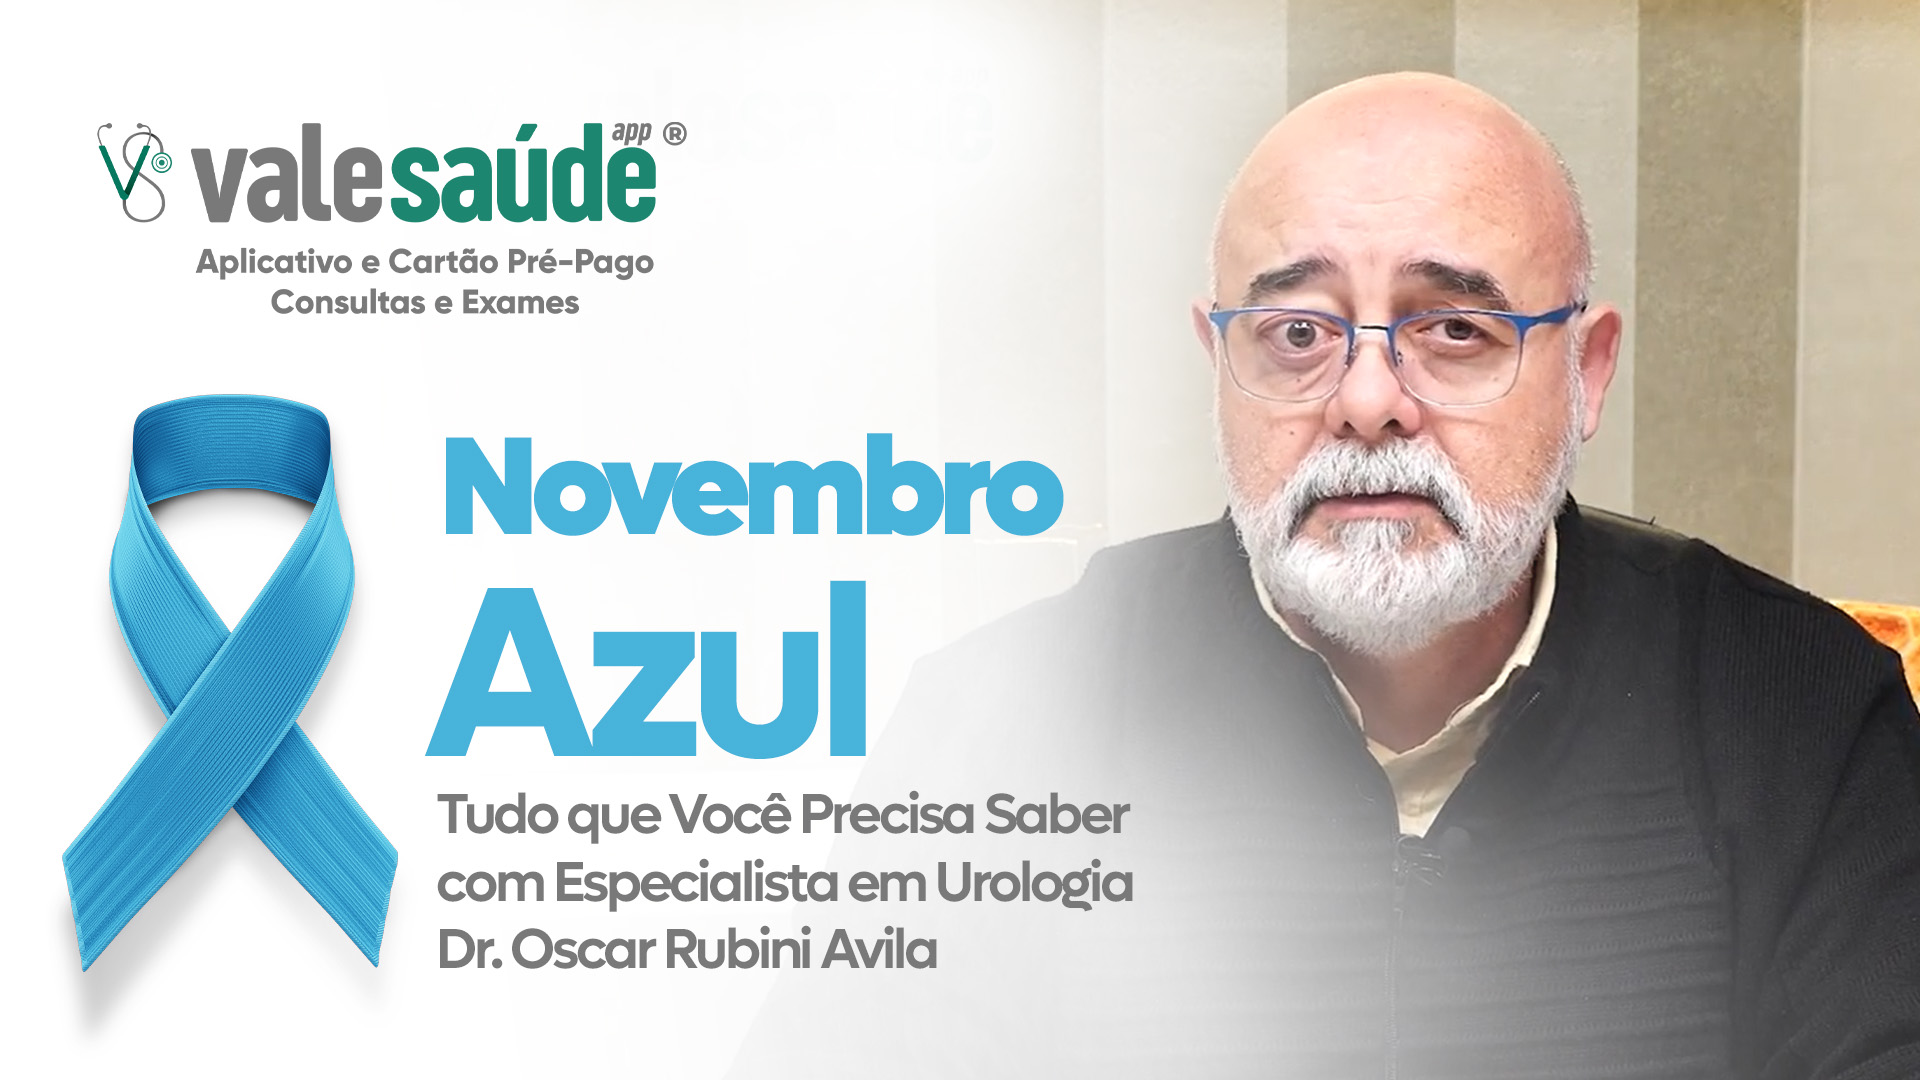 Novembro Azul: Tudo que Você Precisa Saber com Especialista em Urologia, Dr. Oscar Rubini Avila